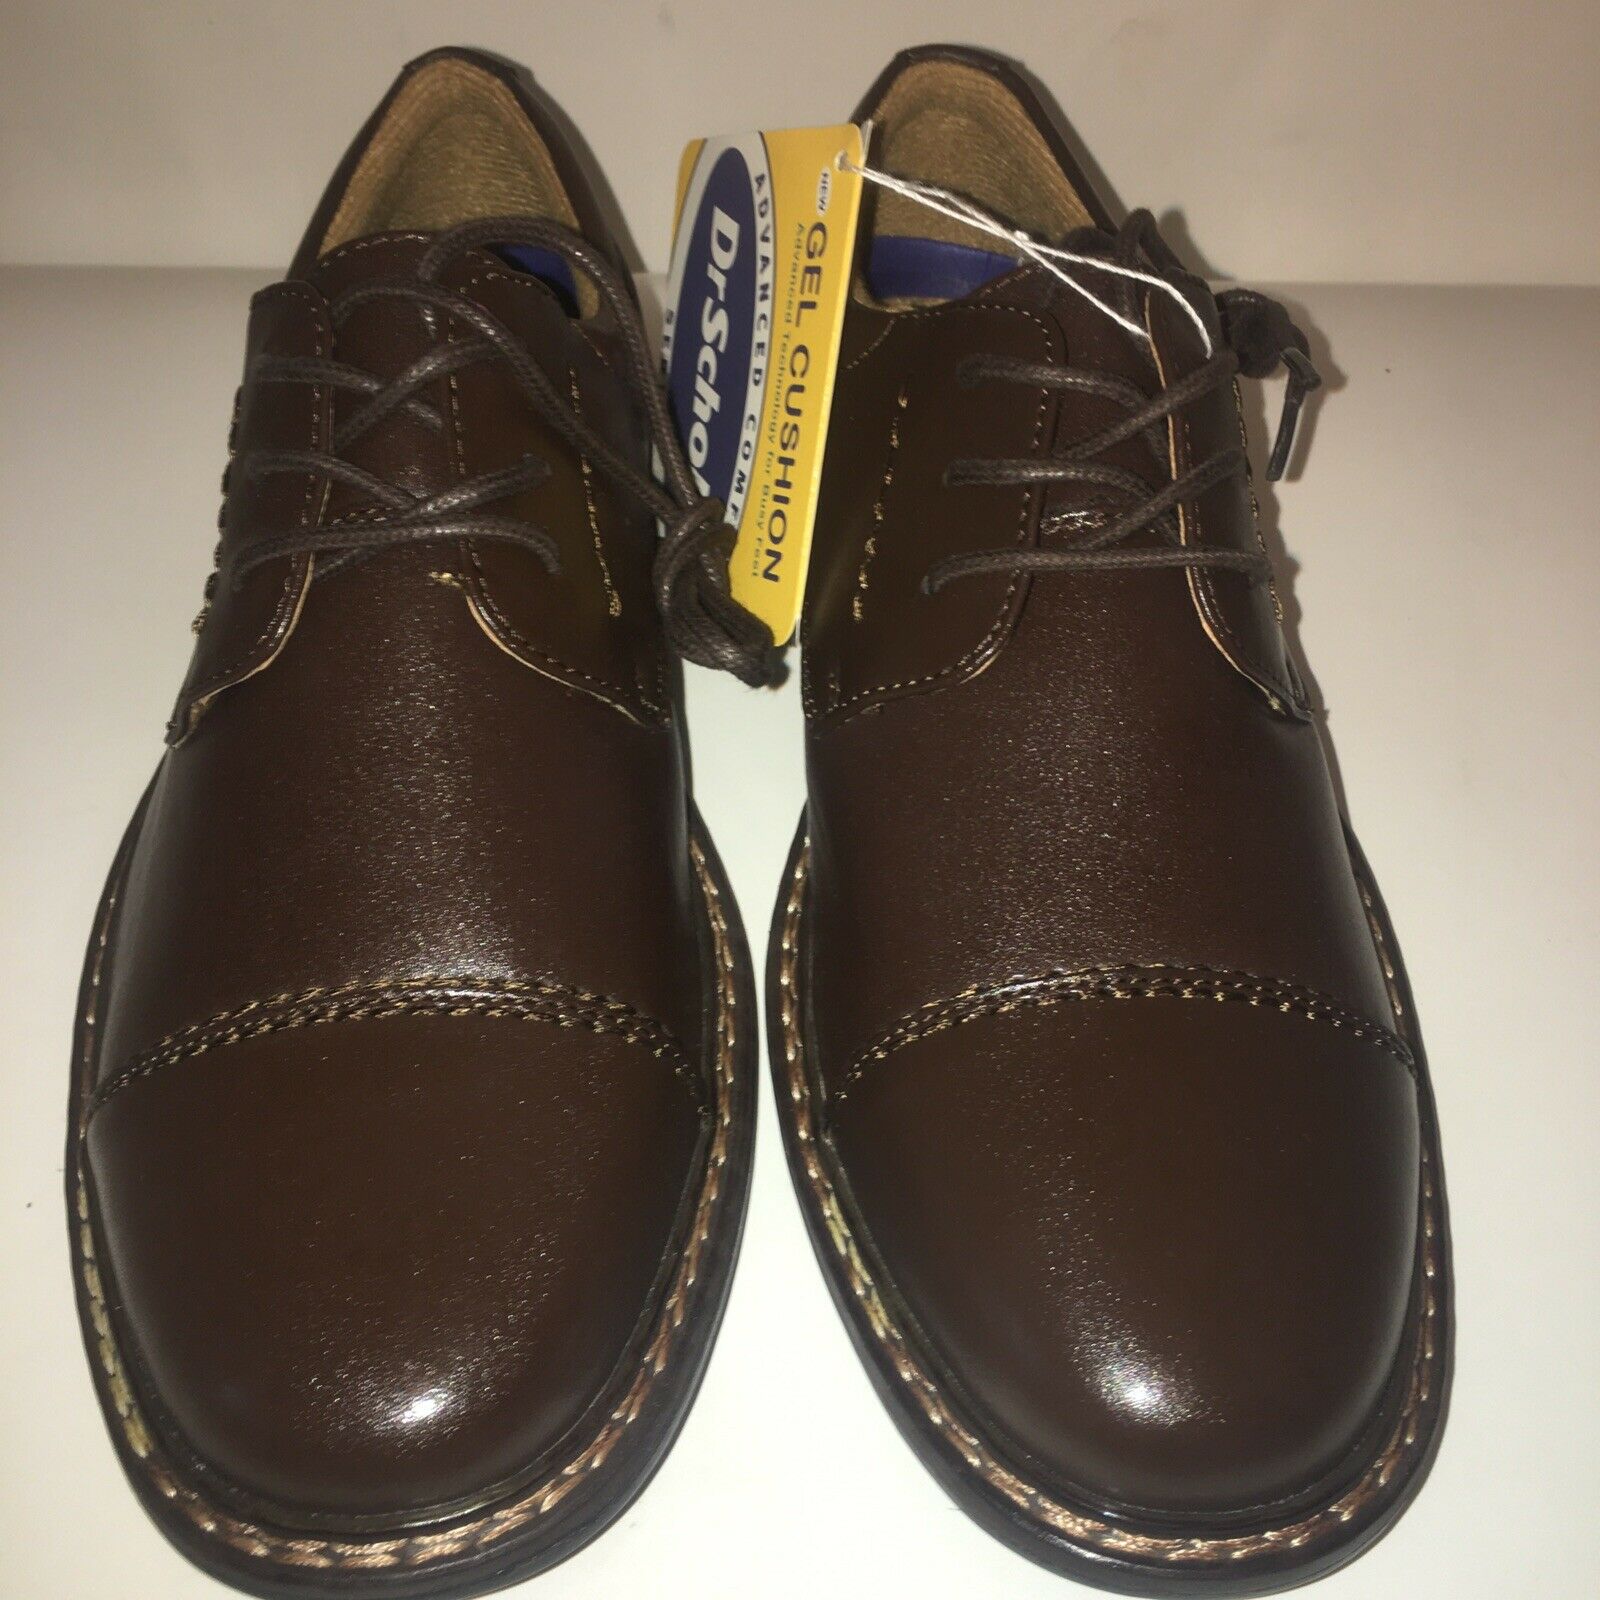 Dr. Scholls Mens Dress Shoes Brown Sz 7 M Leather,Cap Toe Lace Up